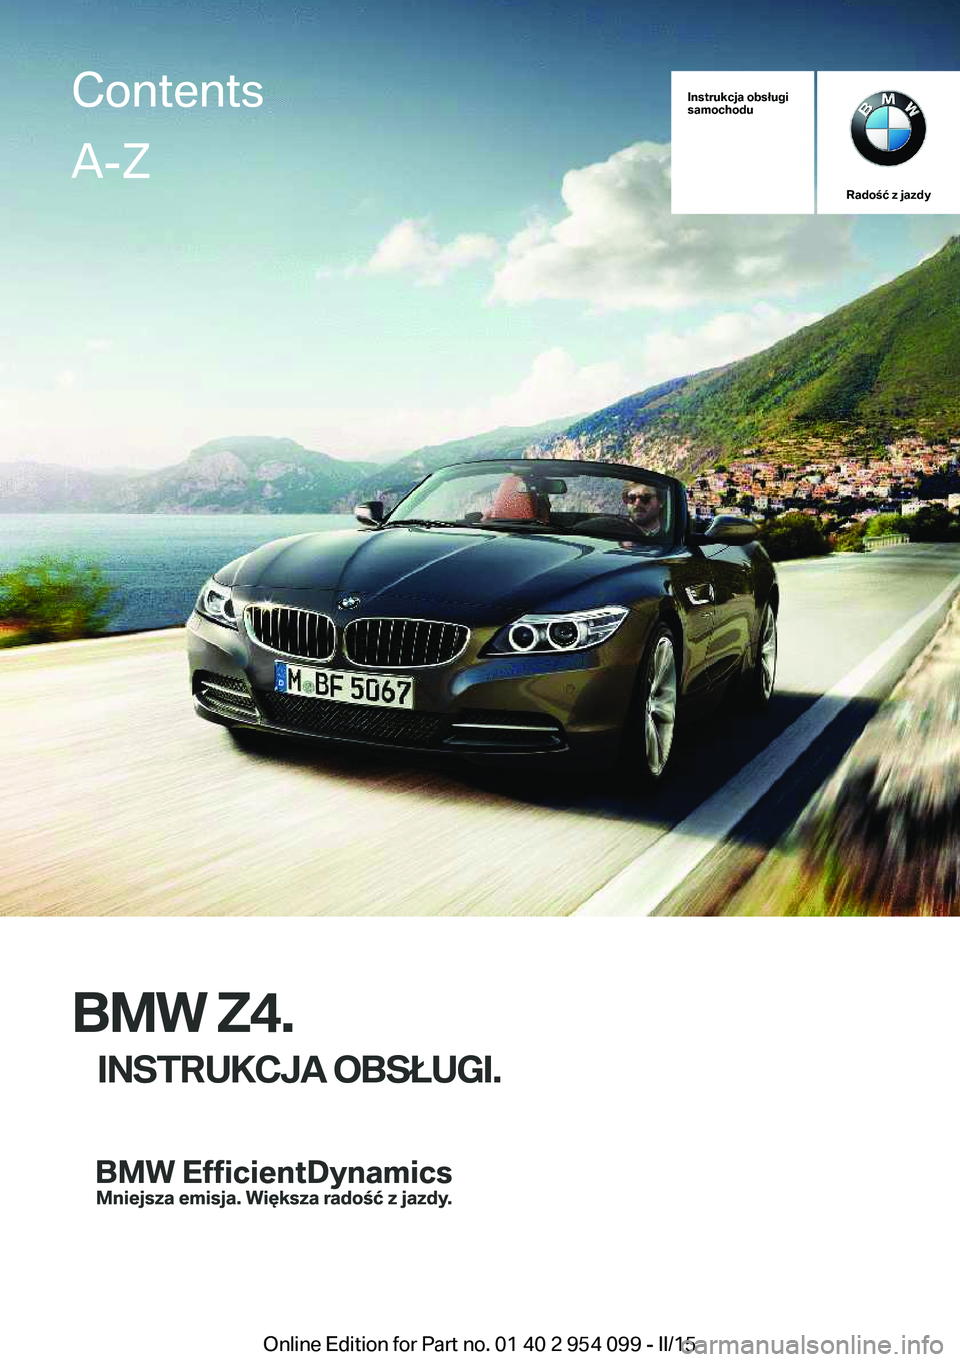 BMW Z4 2016  Instrukcja obsługi (in Polish) Instrukcja obsługi
samochodu
Radość z jazdy
BMW Z4.
INSTRUKCJA OBSŁUGI.
ContentsA-Z
Online Edition for Part no. 01 40 2 954 099 - II/15   